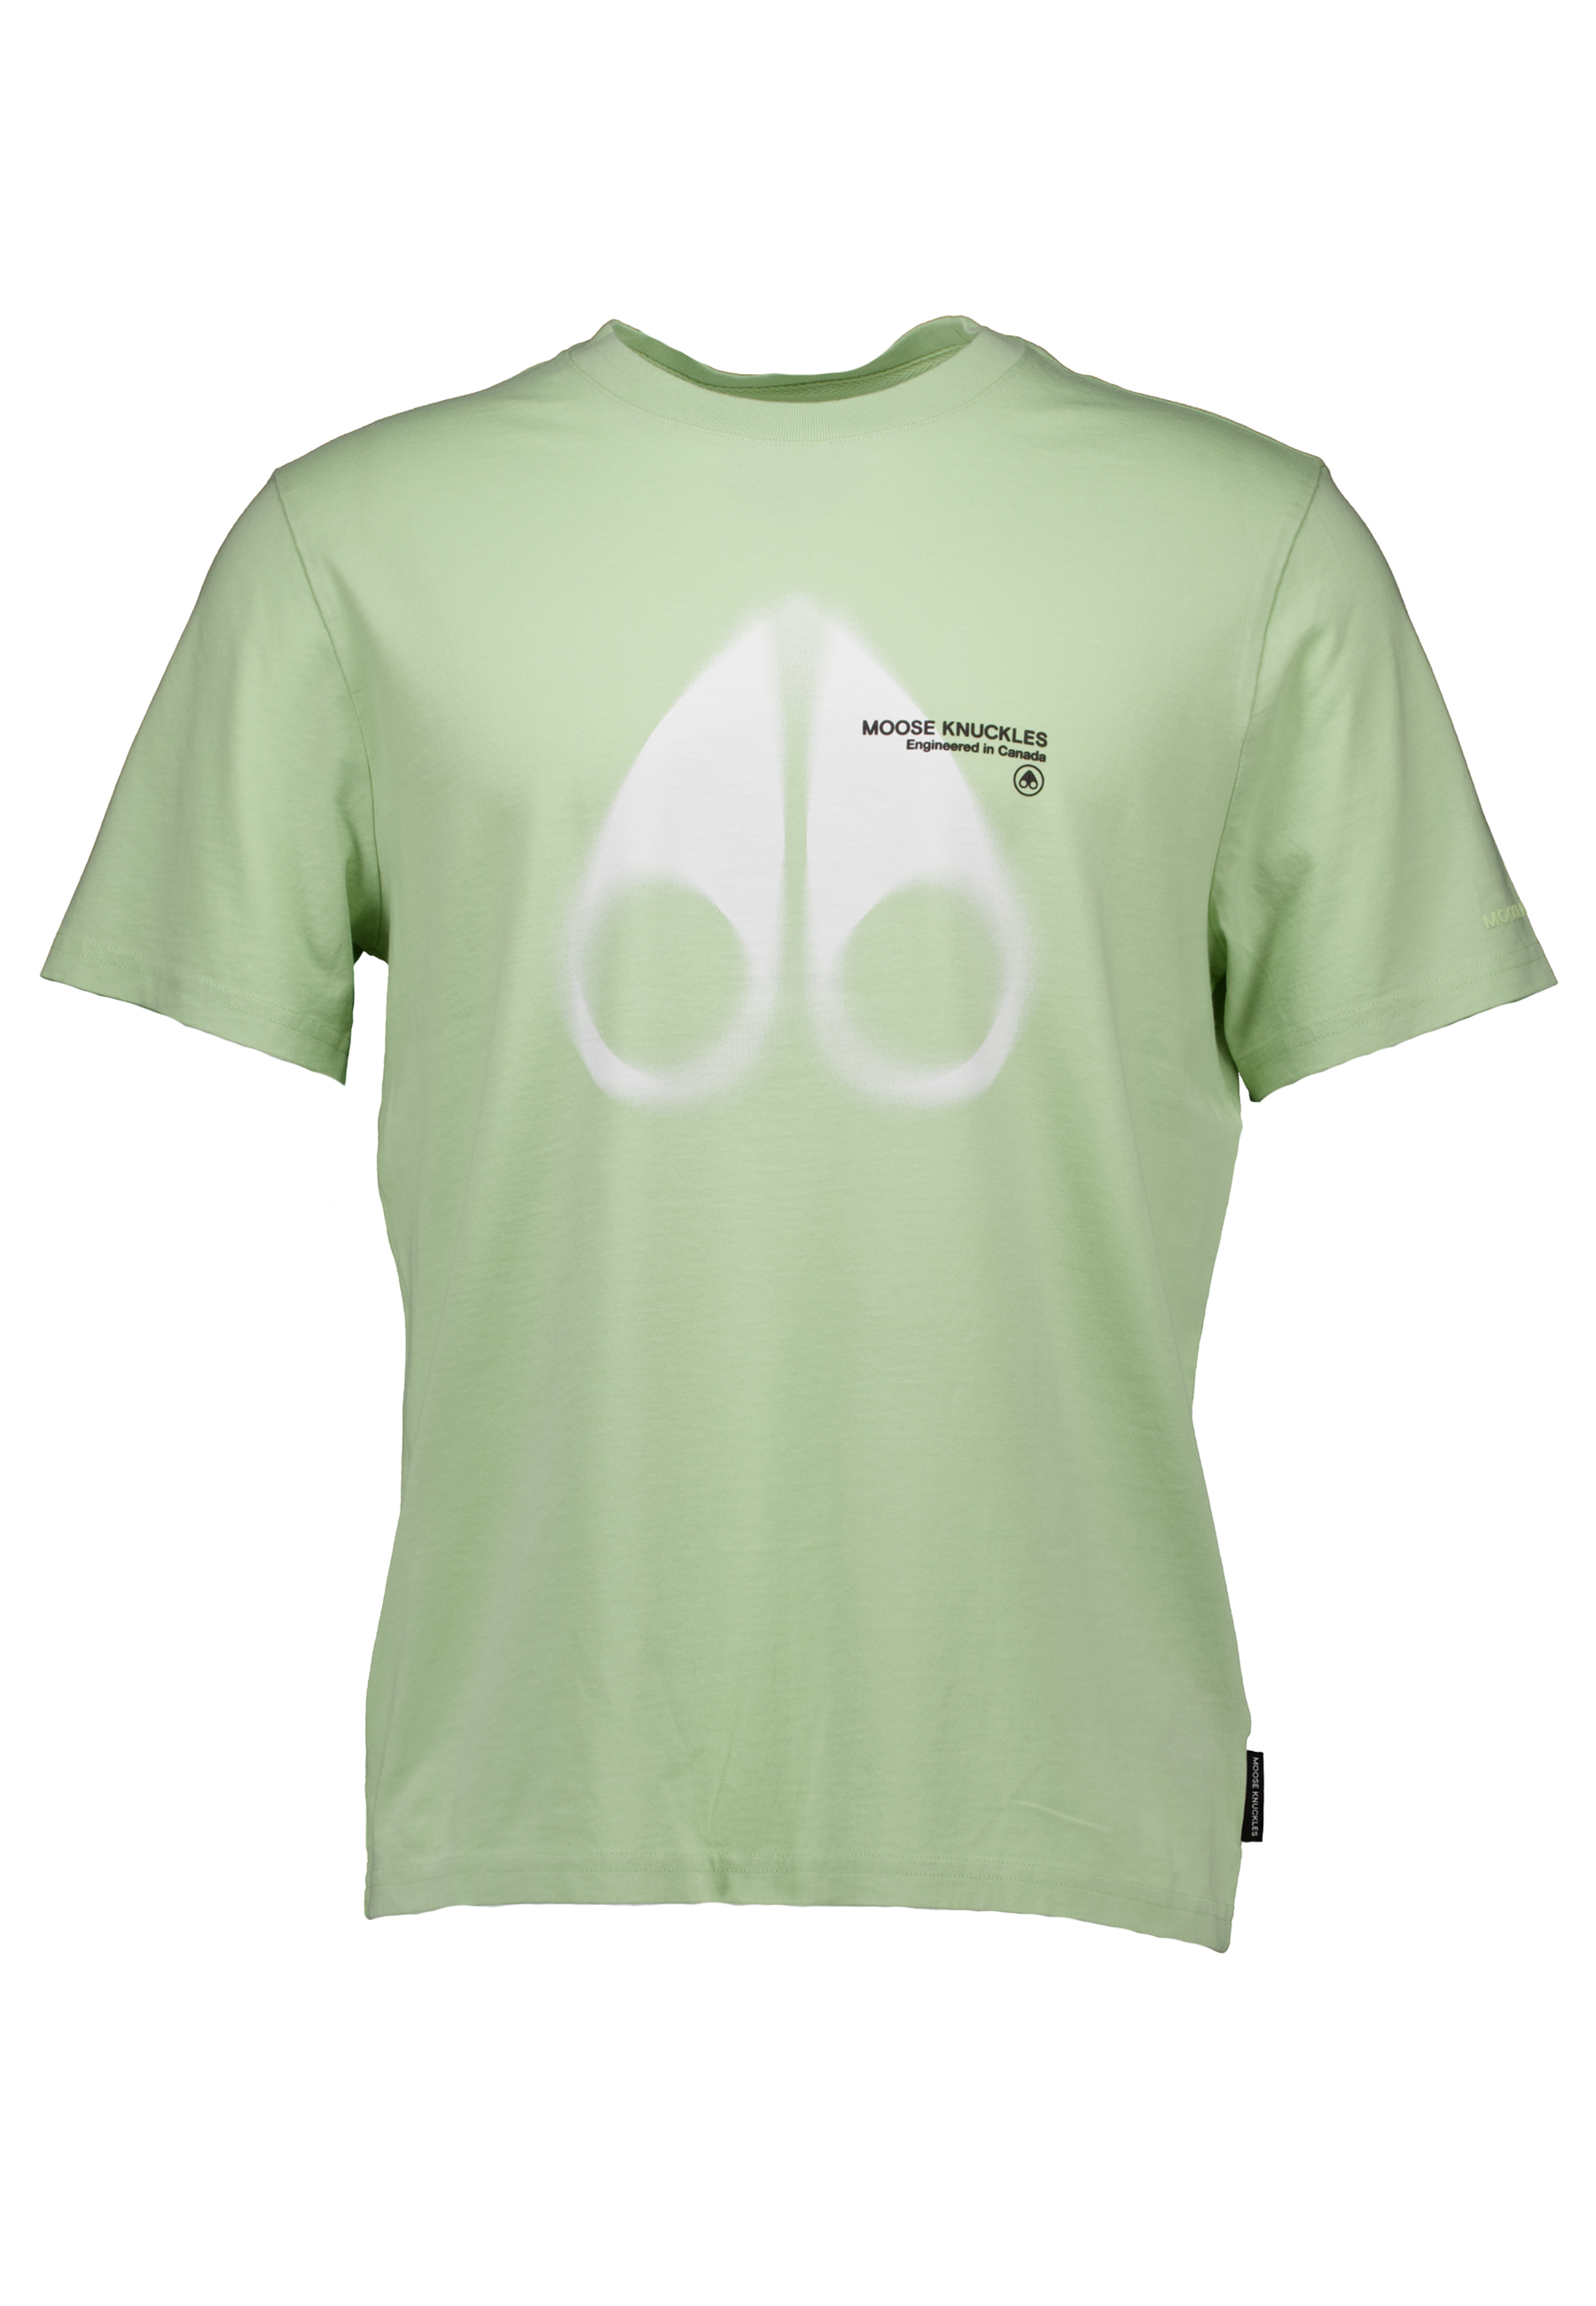 Shirt Mint groen Maurice t-shirts mint groen